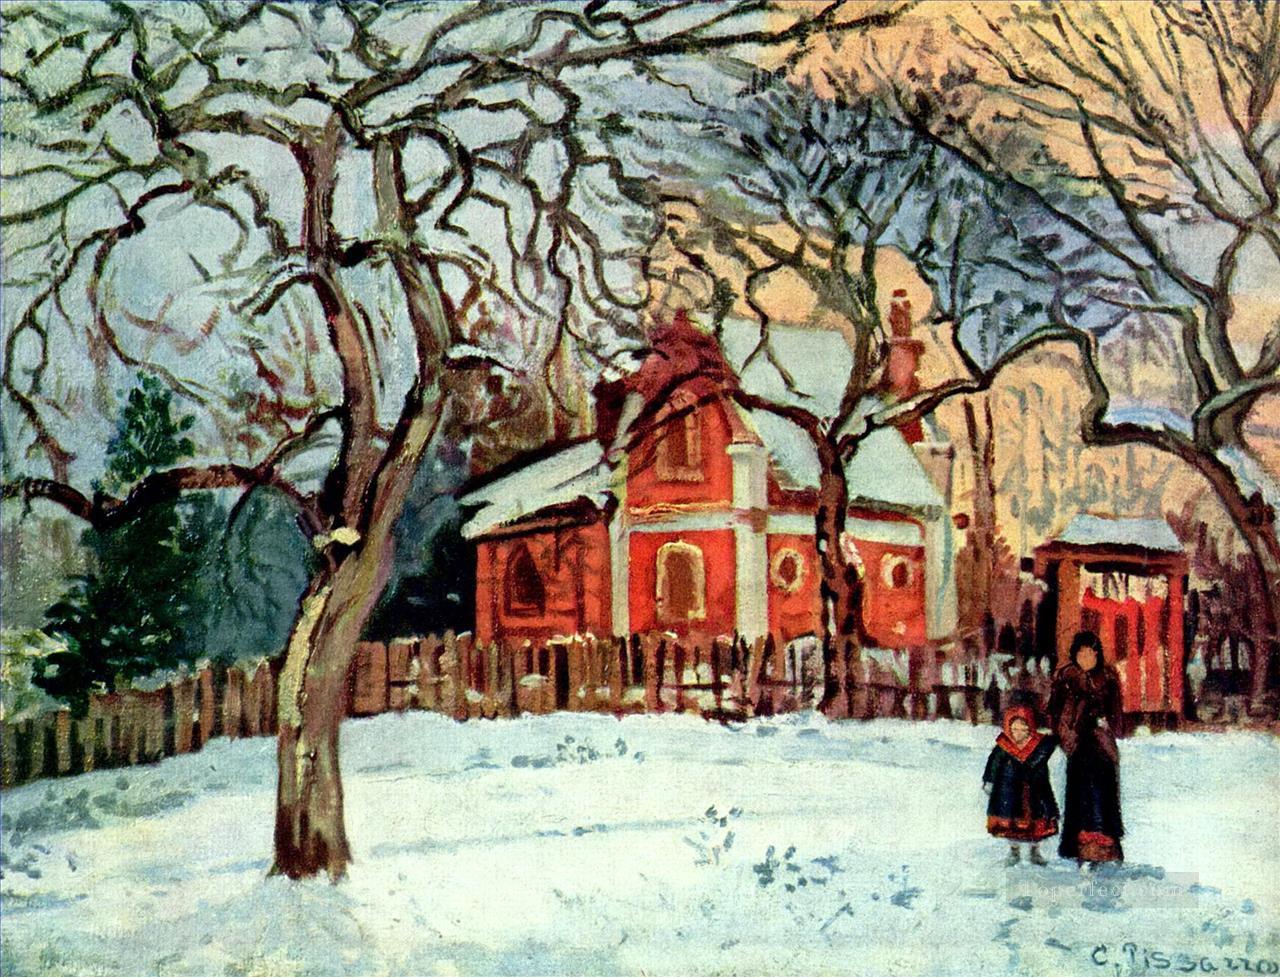 栗の木 ルーブシエンヌ 冬 1872 カミーユ ピサロ油絵